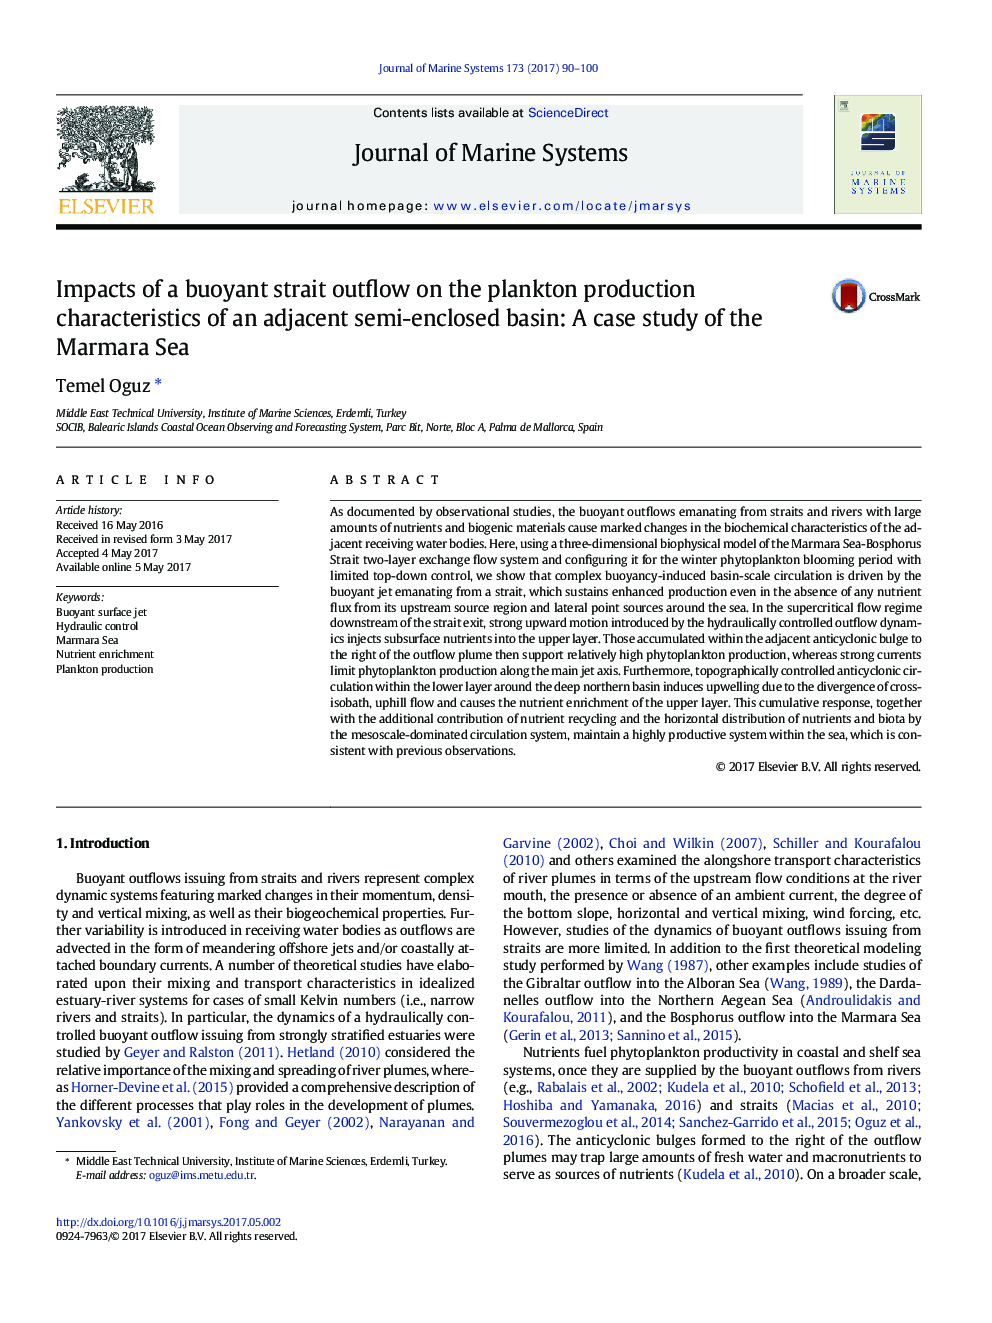 تأثیر یک جریان خروجی تردد شناور بر ویژگی های تولید پلانکتون حوضه نیمه محصور: مطالعه موردی دریای مرمره 